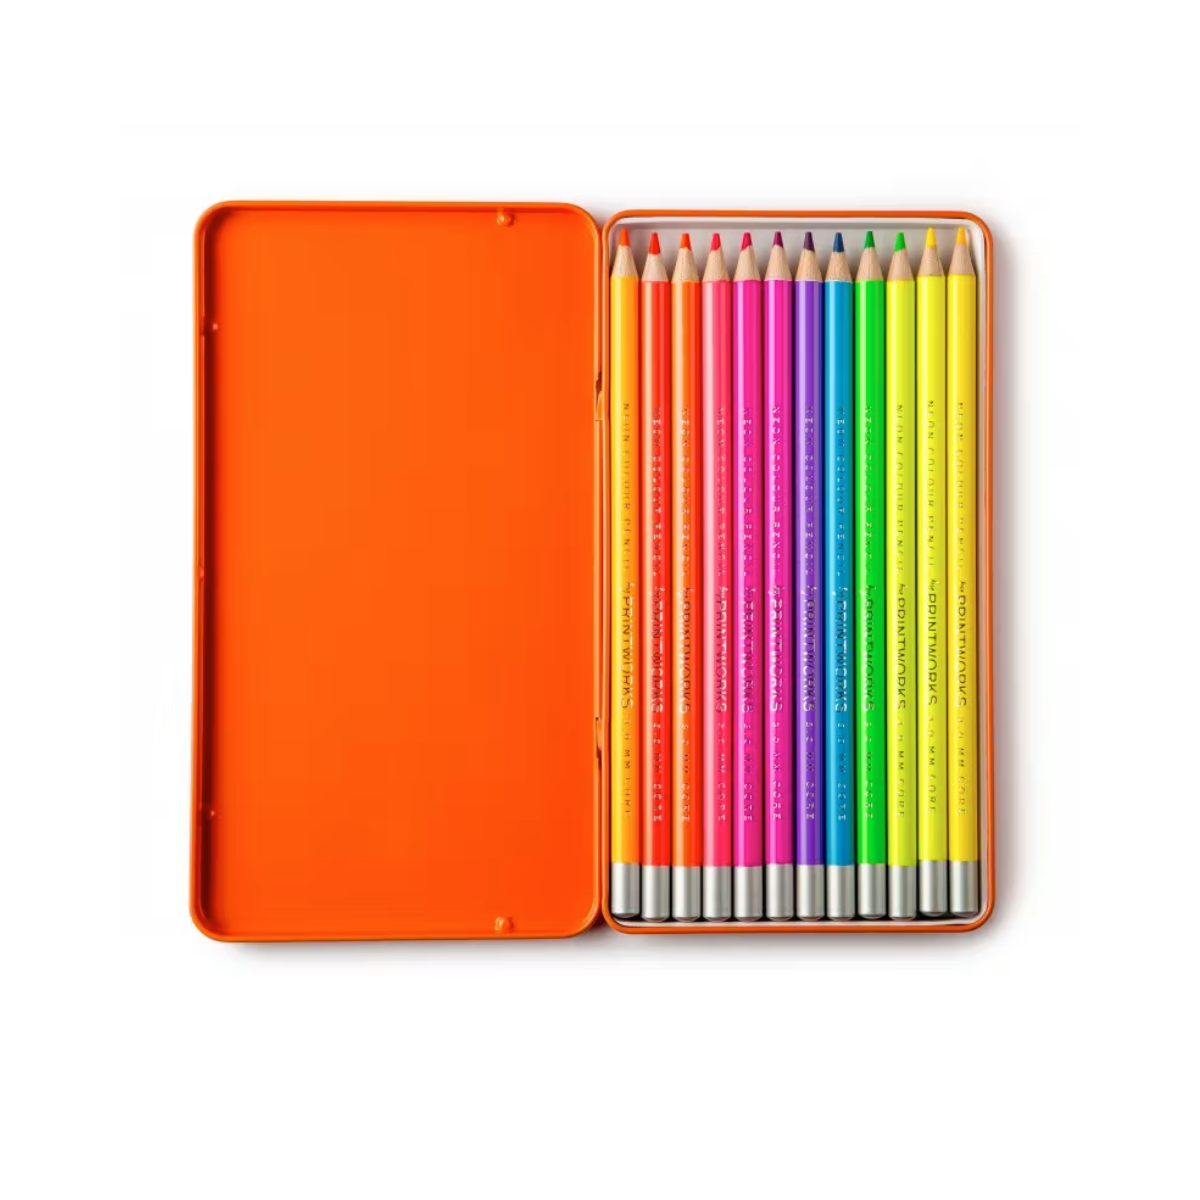 Colored Pencils - Neon